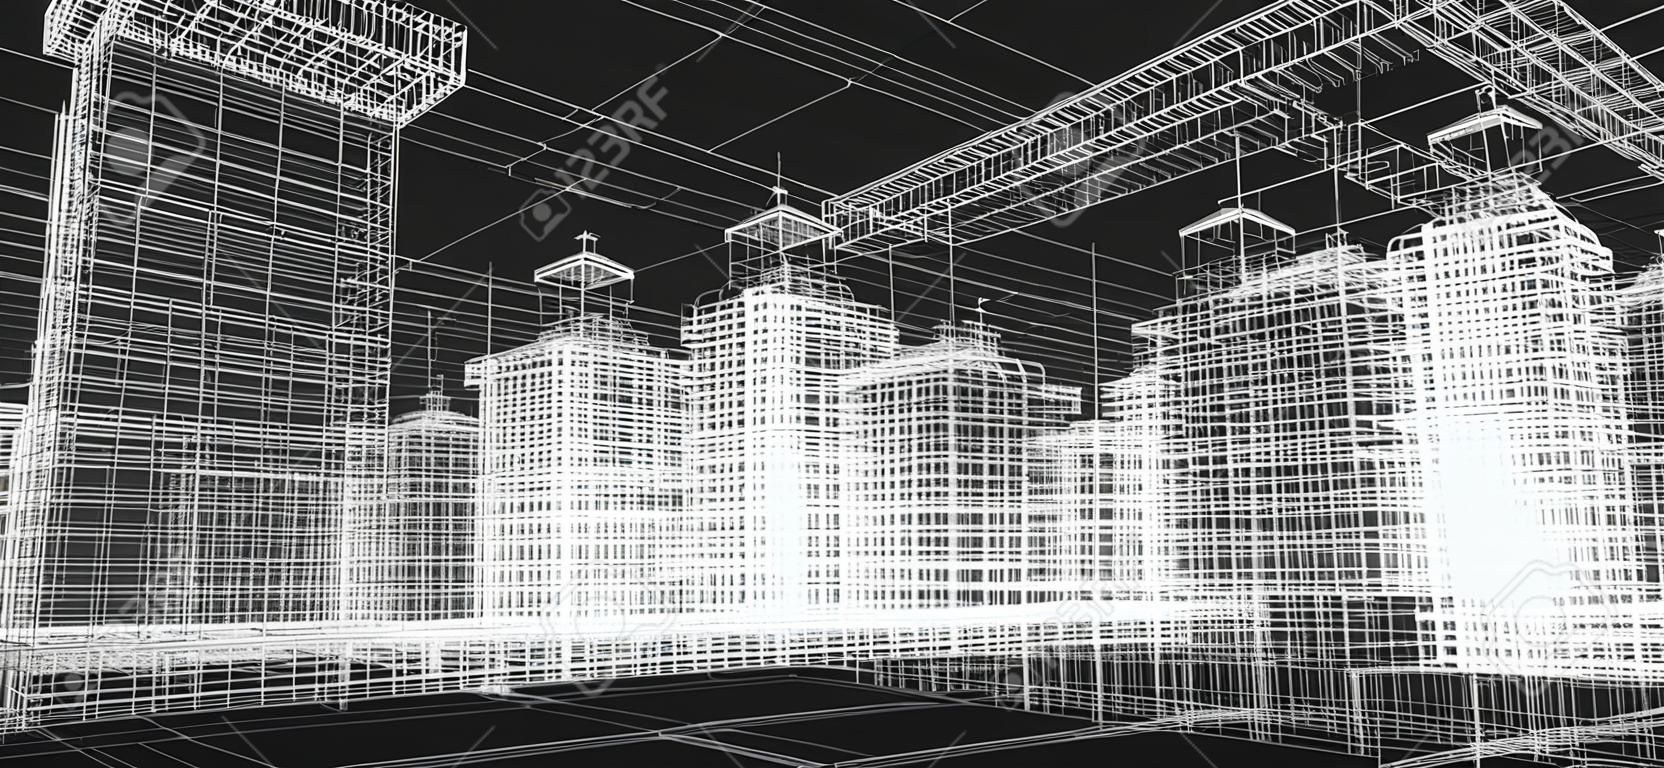 Ciudad proyecto edificios, imprimir alambre 3d, diseño. Arquitectura, plan urbano, la industria de bienes raíces